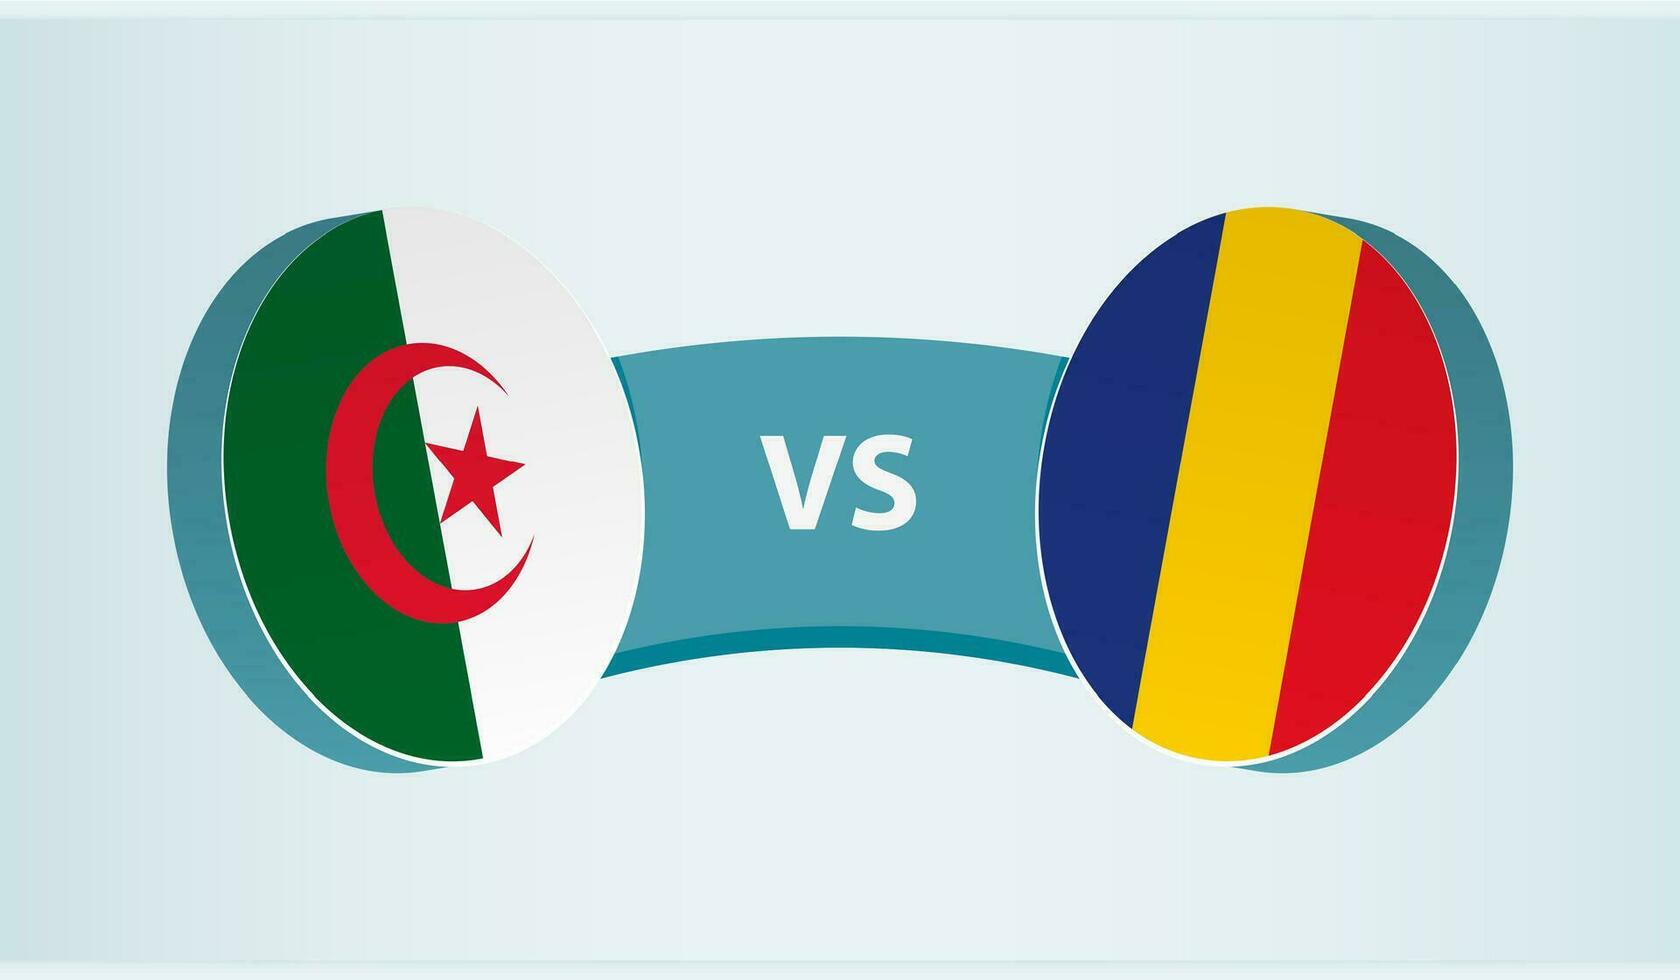 Algeria versus Romania, team sports competition concept. vector